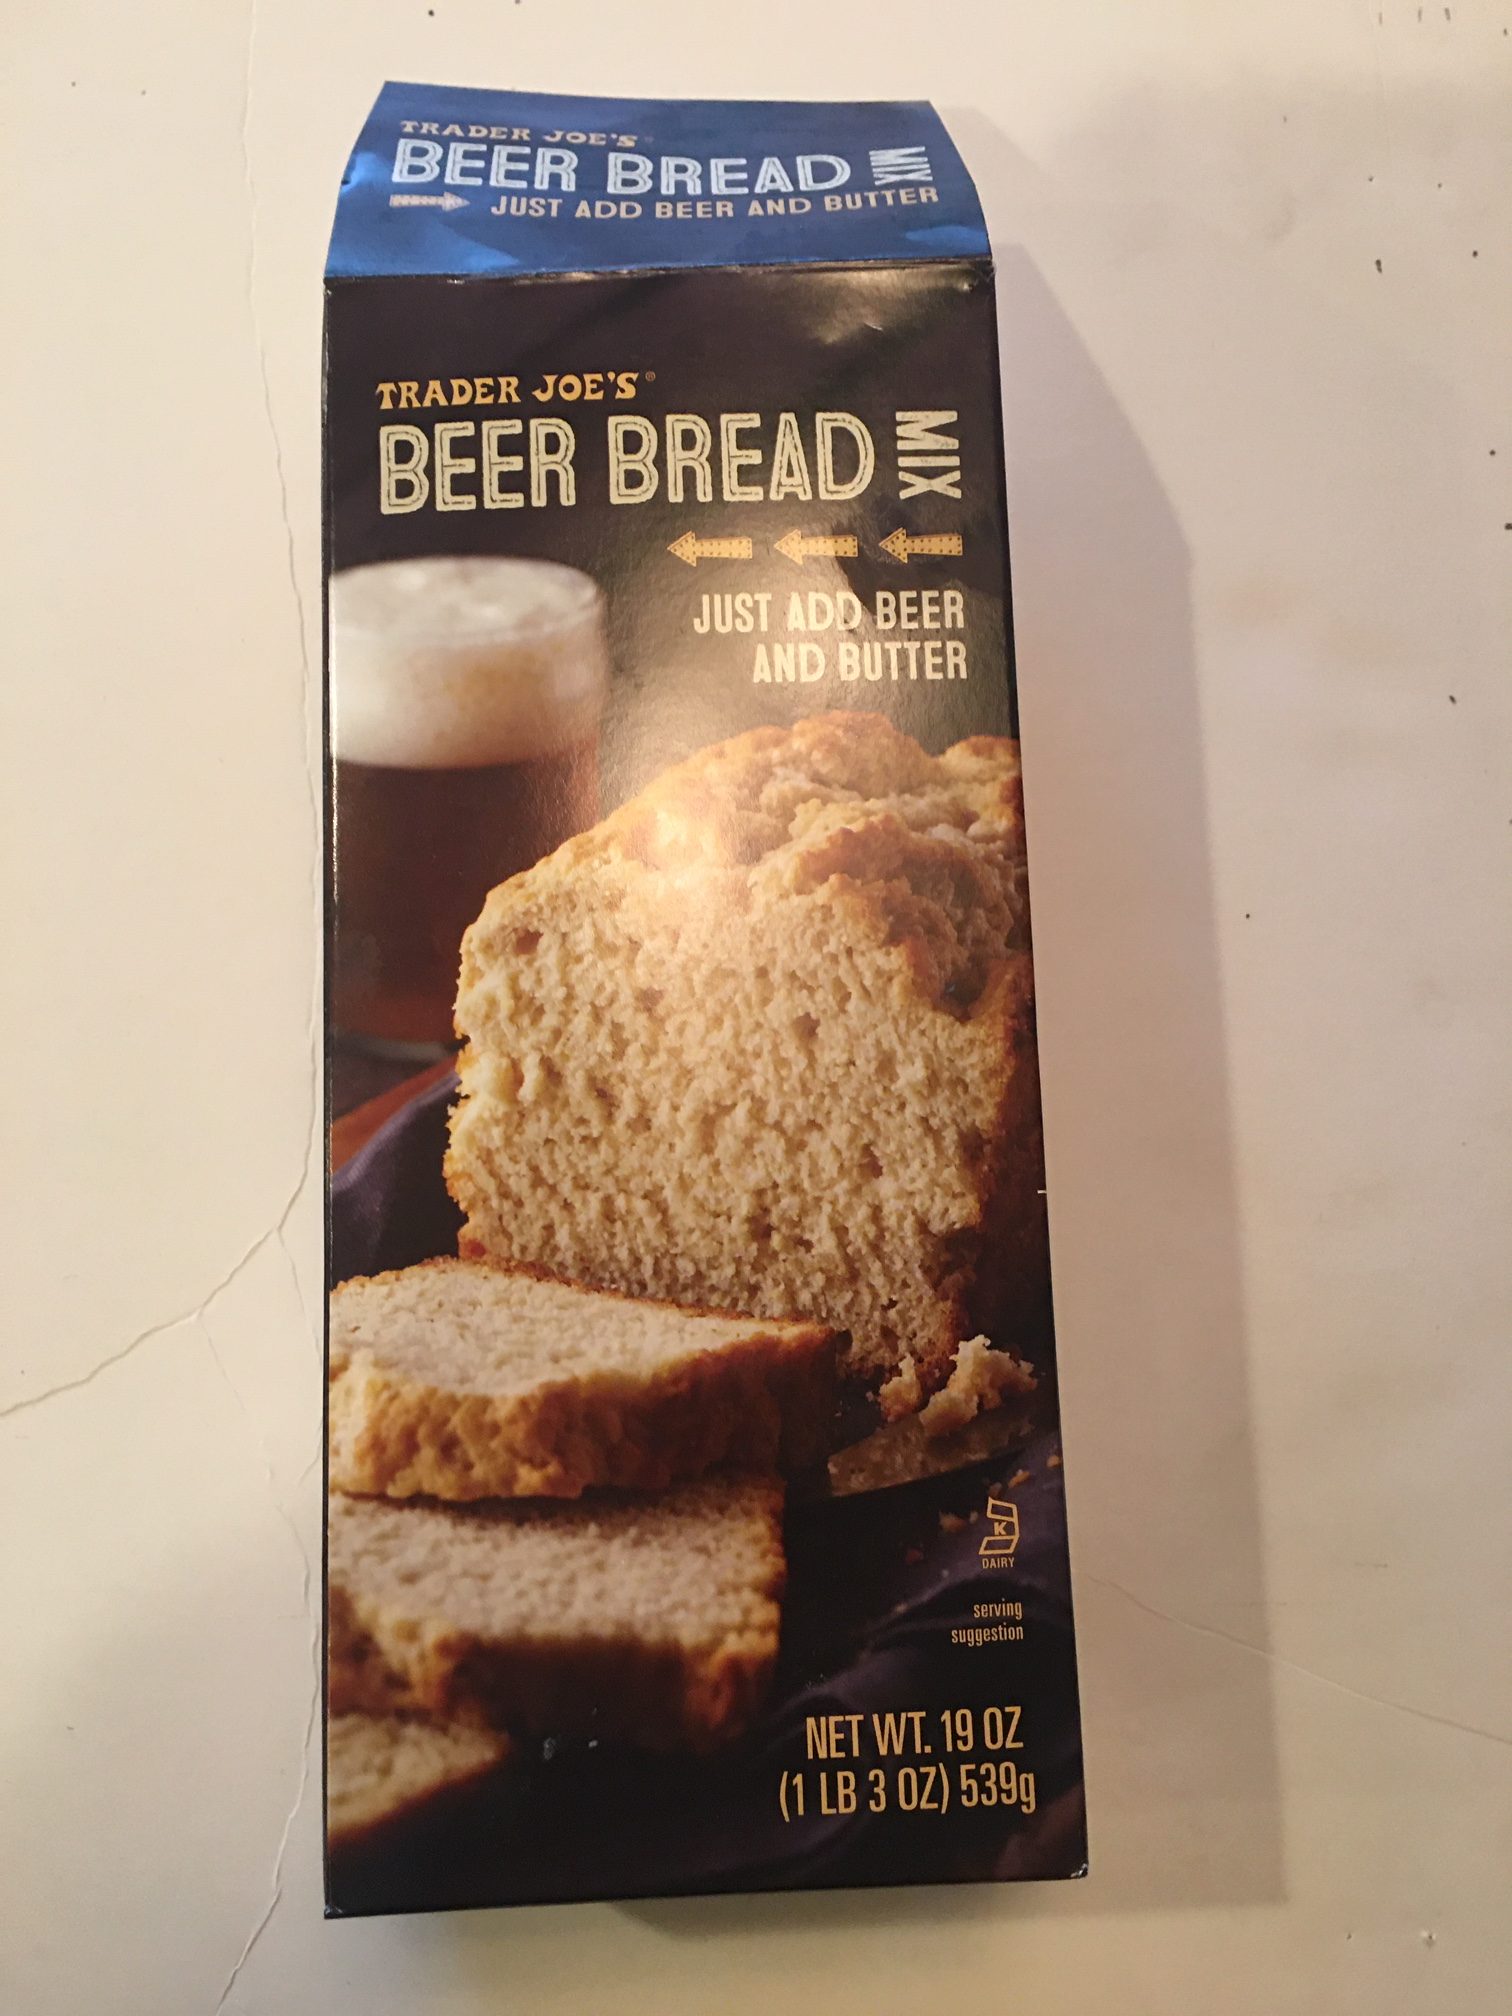 Trader Joe's beer bread mix box